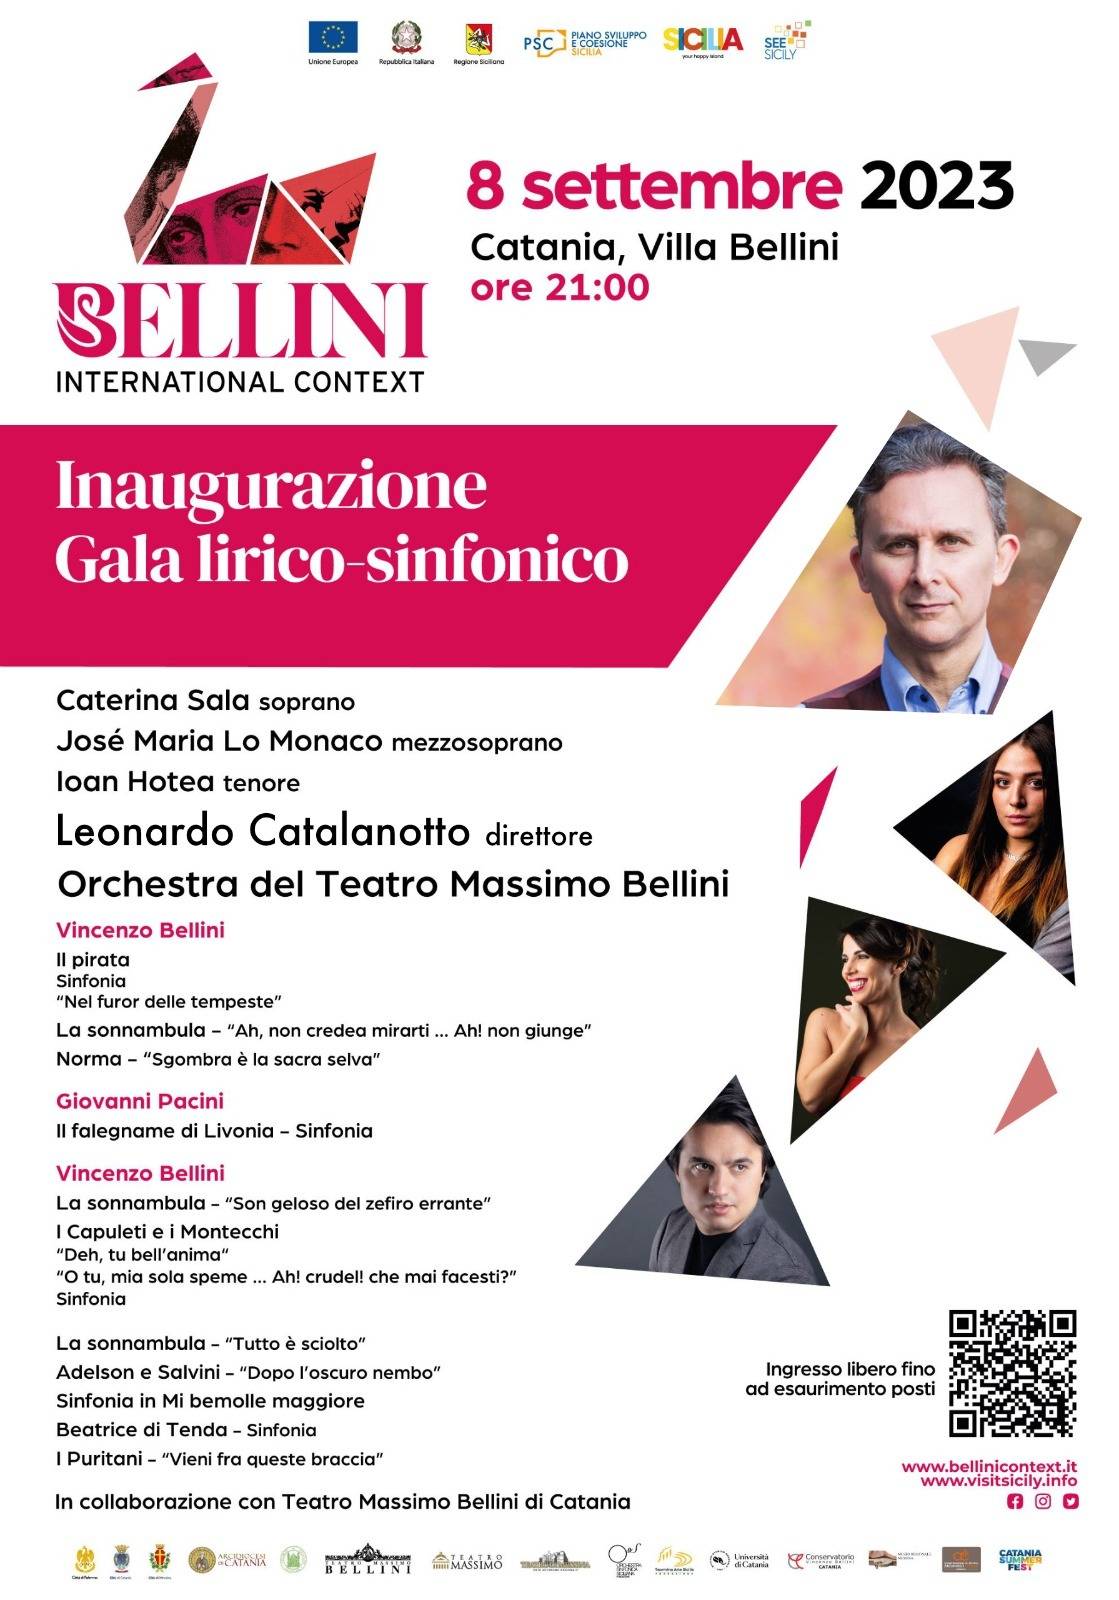 Al via la terza edizione del Bellini International Context, promosso da Regione Siciliana -Assessorato Turismo, Sport e Spettacolo.